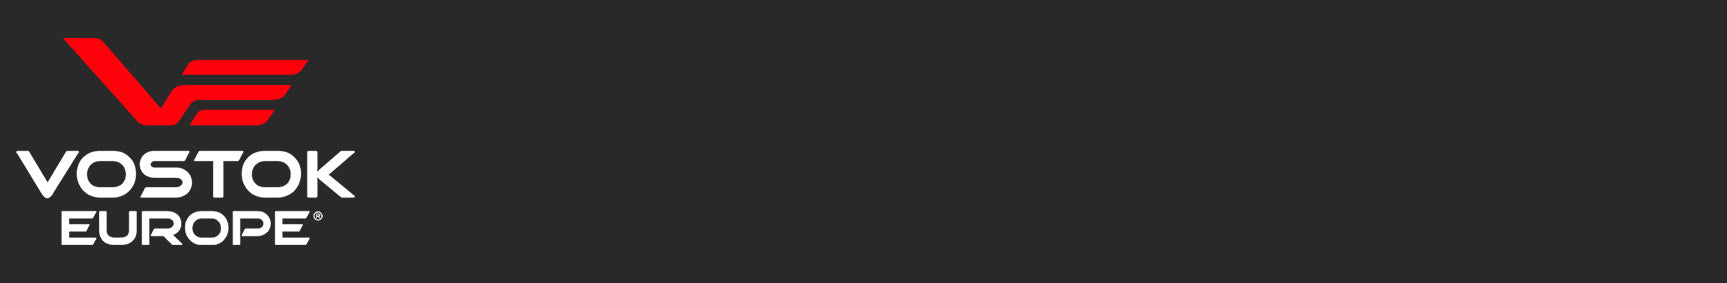 vostok europe lunokhod 2 logo